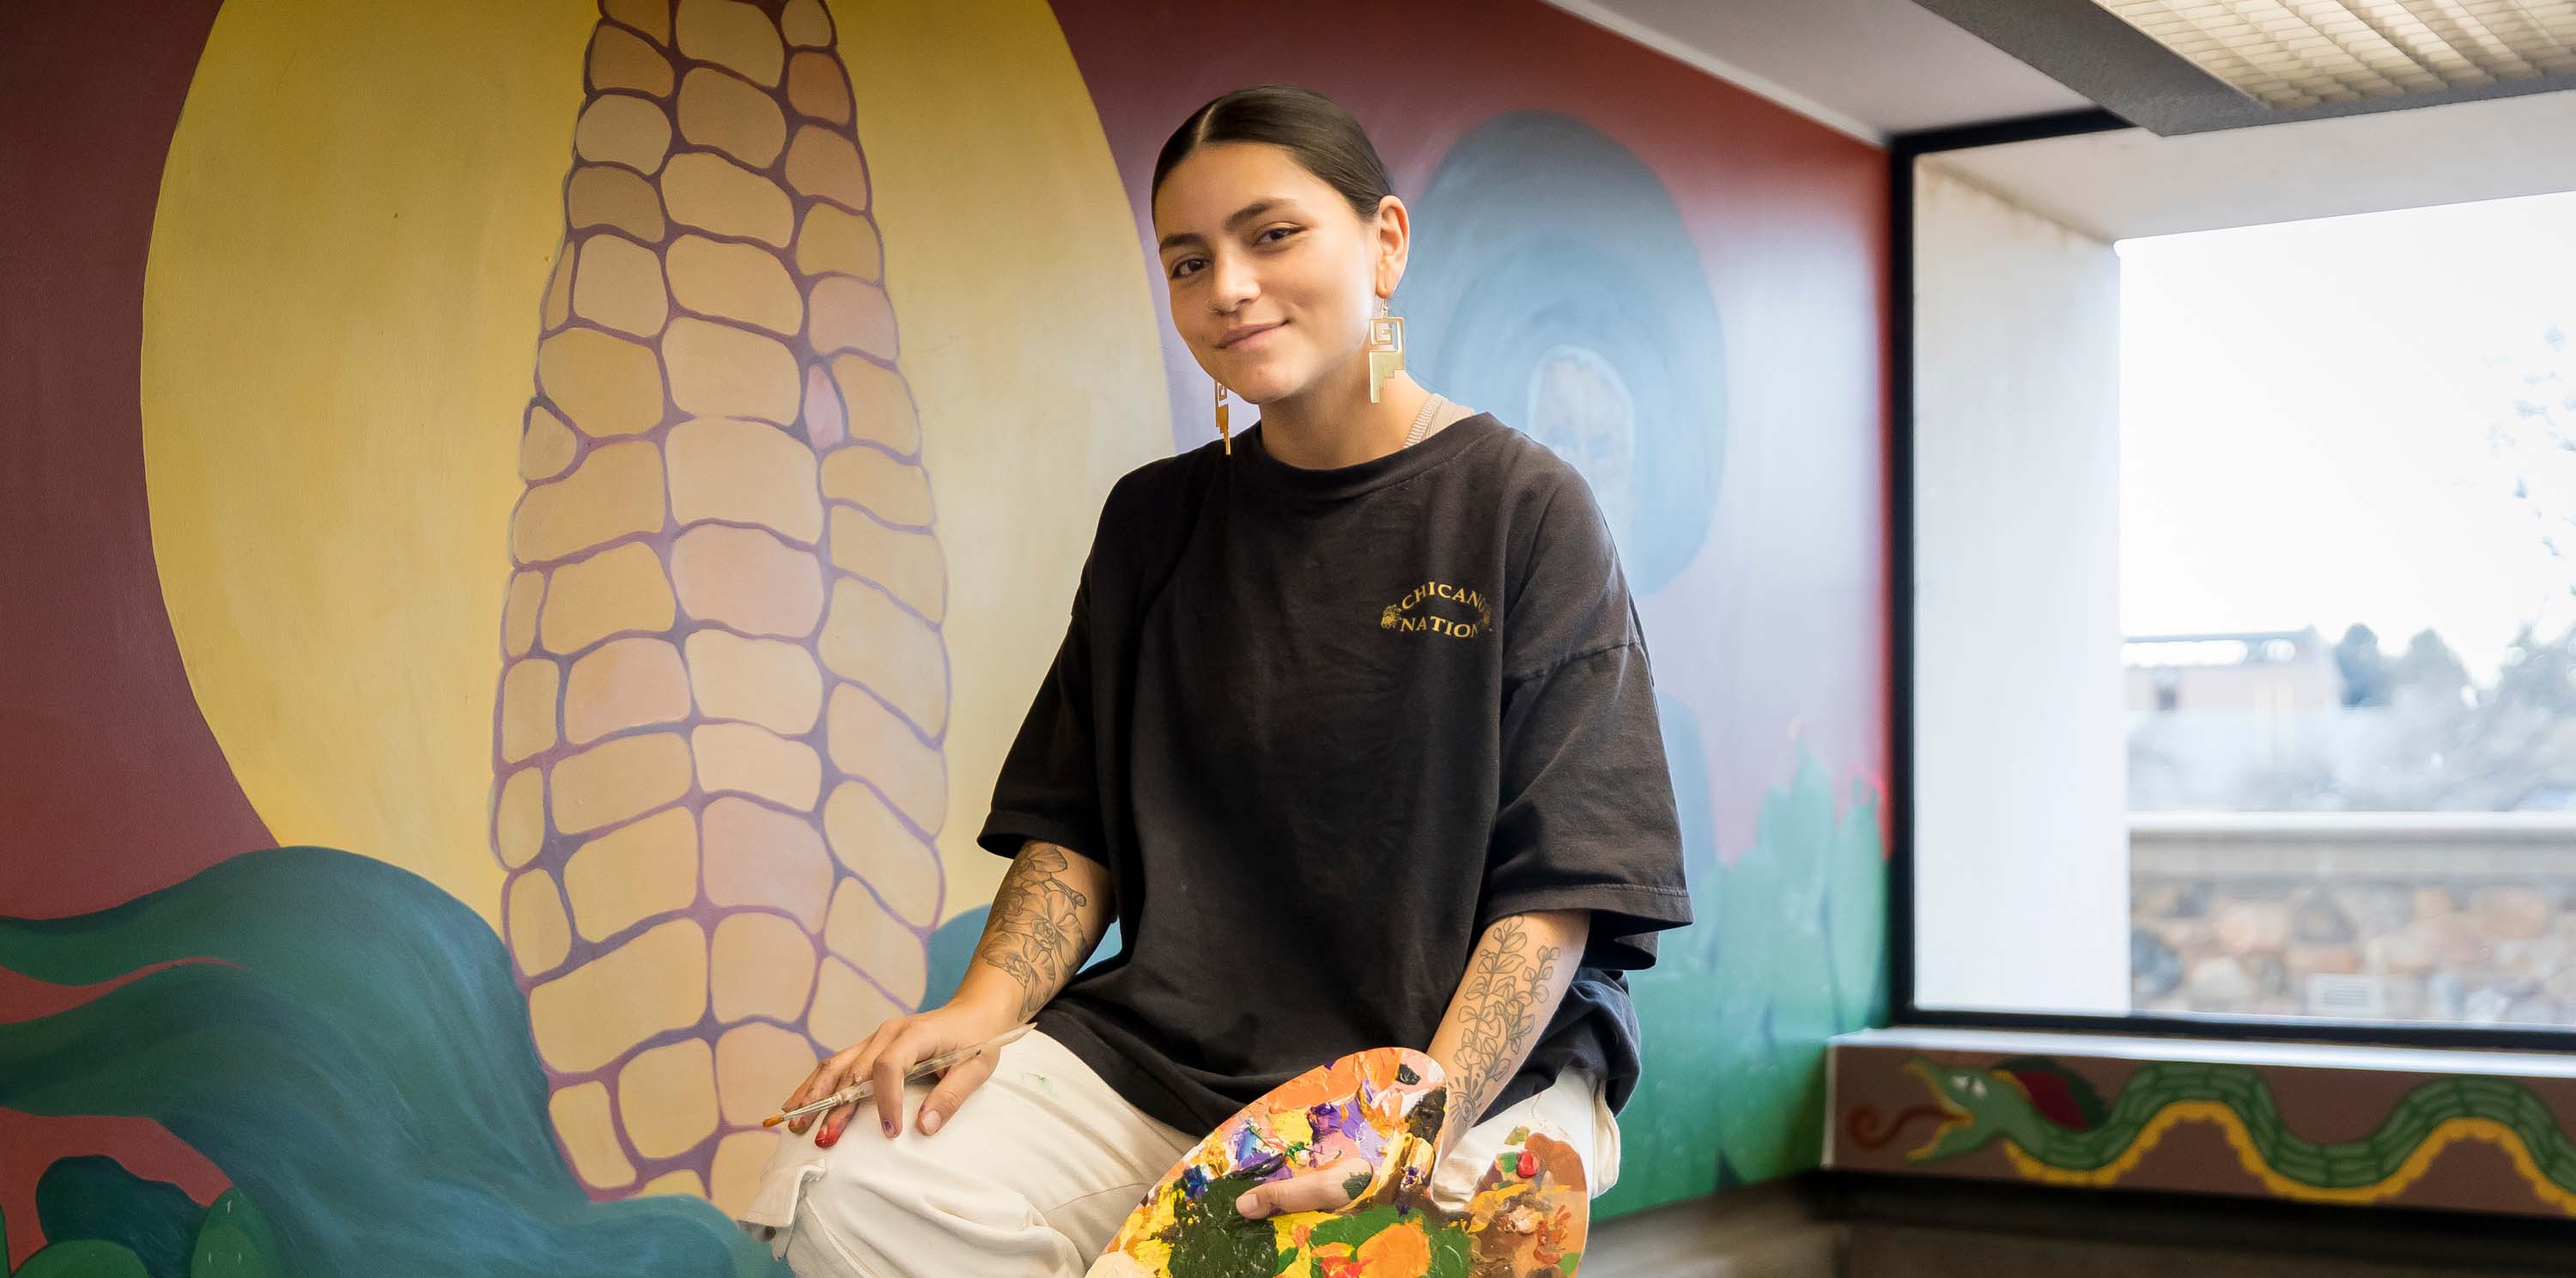 La alumna Brenda Vargas sentada en una escalera con un pincel frente a su mural